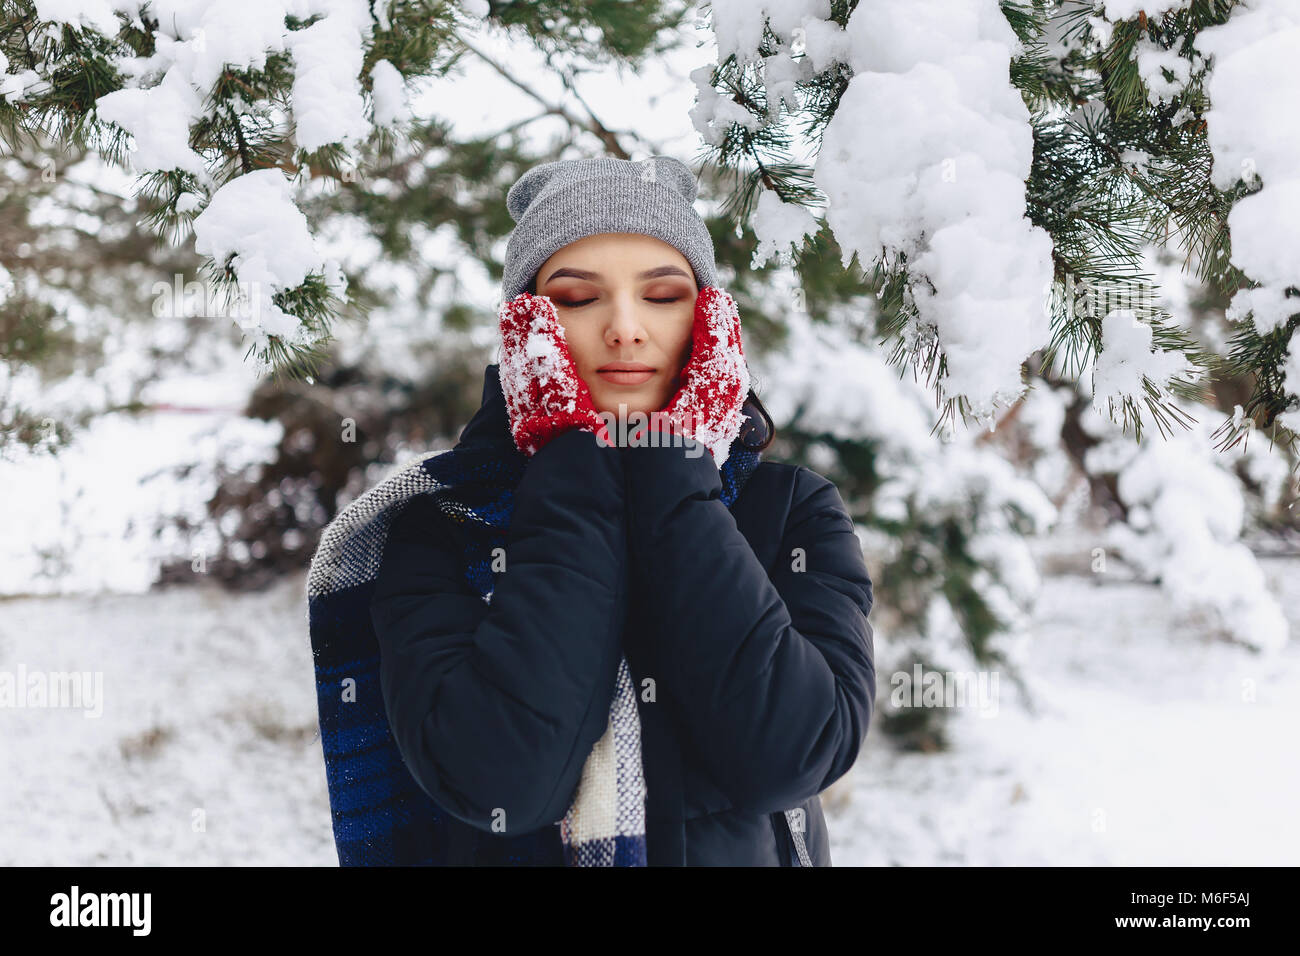 La ragazza warmes suo guance in guanti con il freddo inverno nella foresta di pini coperti di neve Foto Stock